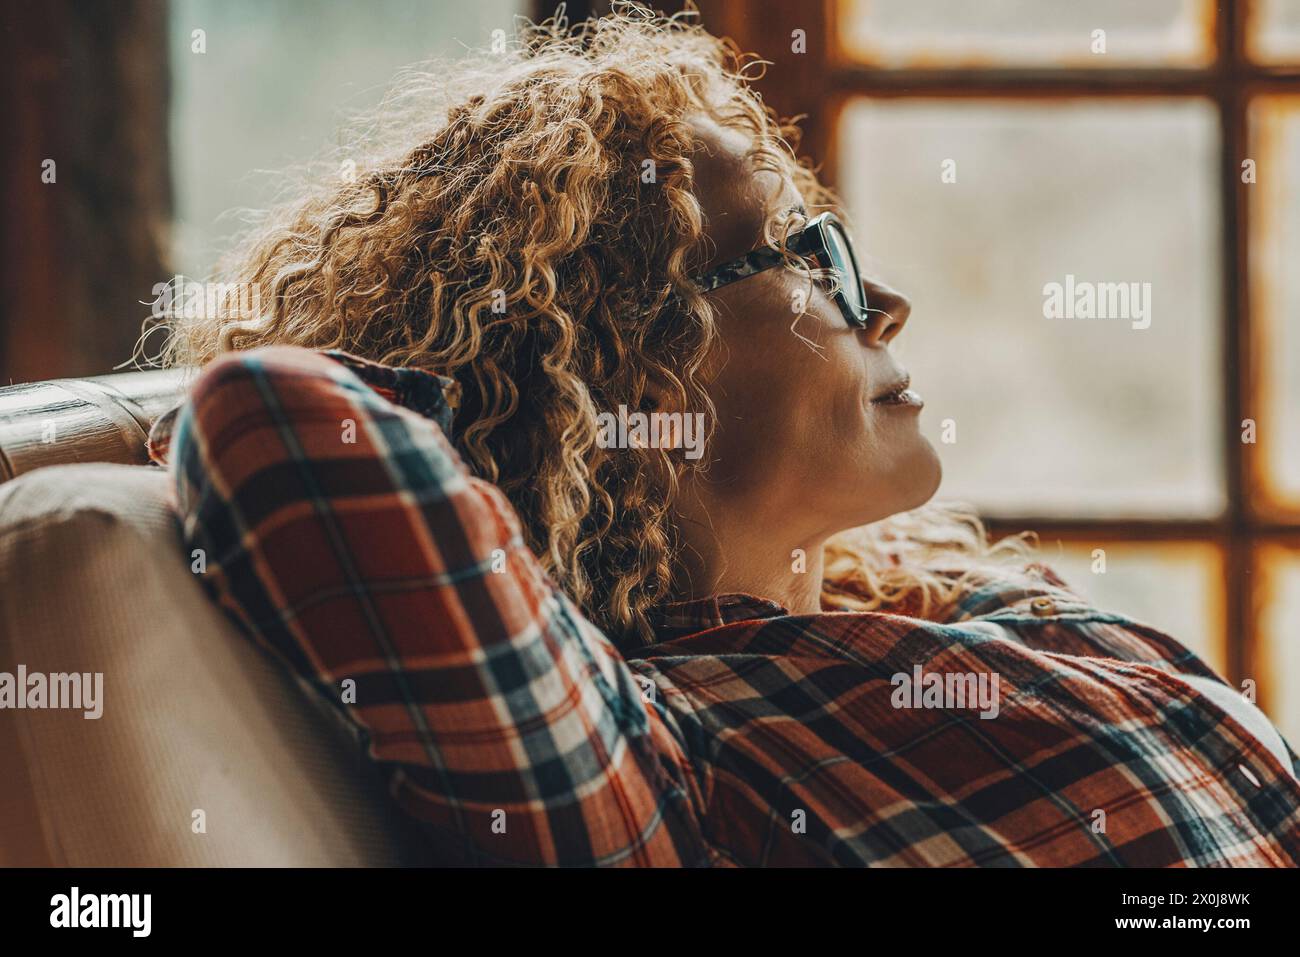 Donna adulta di mezza età che si allunga e si rilassa a casa seduta sulla sedia guardando fuori dalle finestre sullo sfondo - concetto di stile di vita femminile single felice - primo piano di giovane maturo con gli occhiali da vista Foto Stock